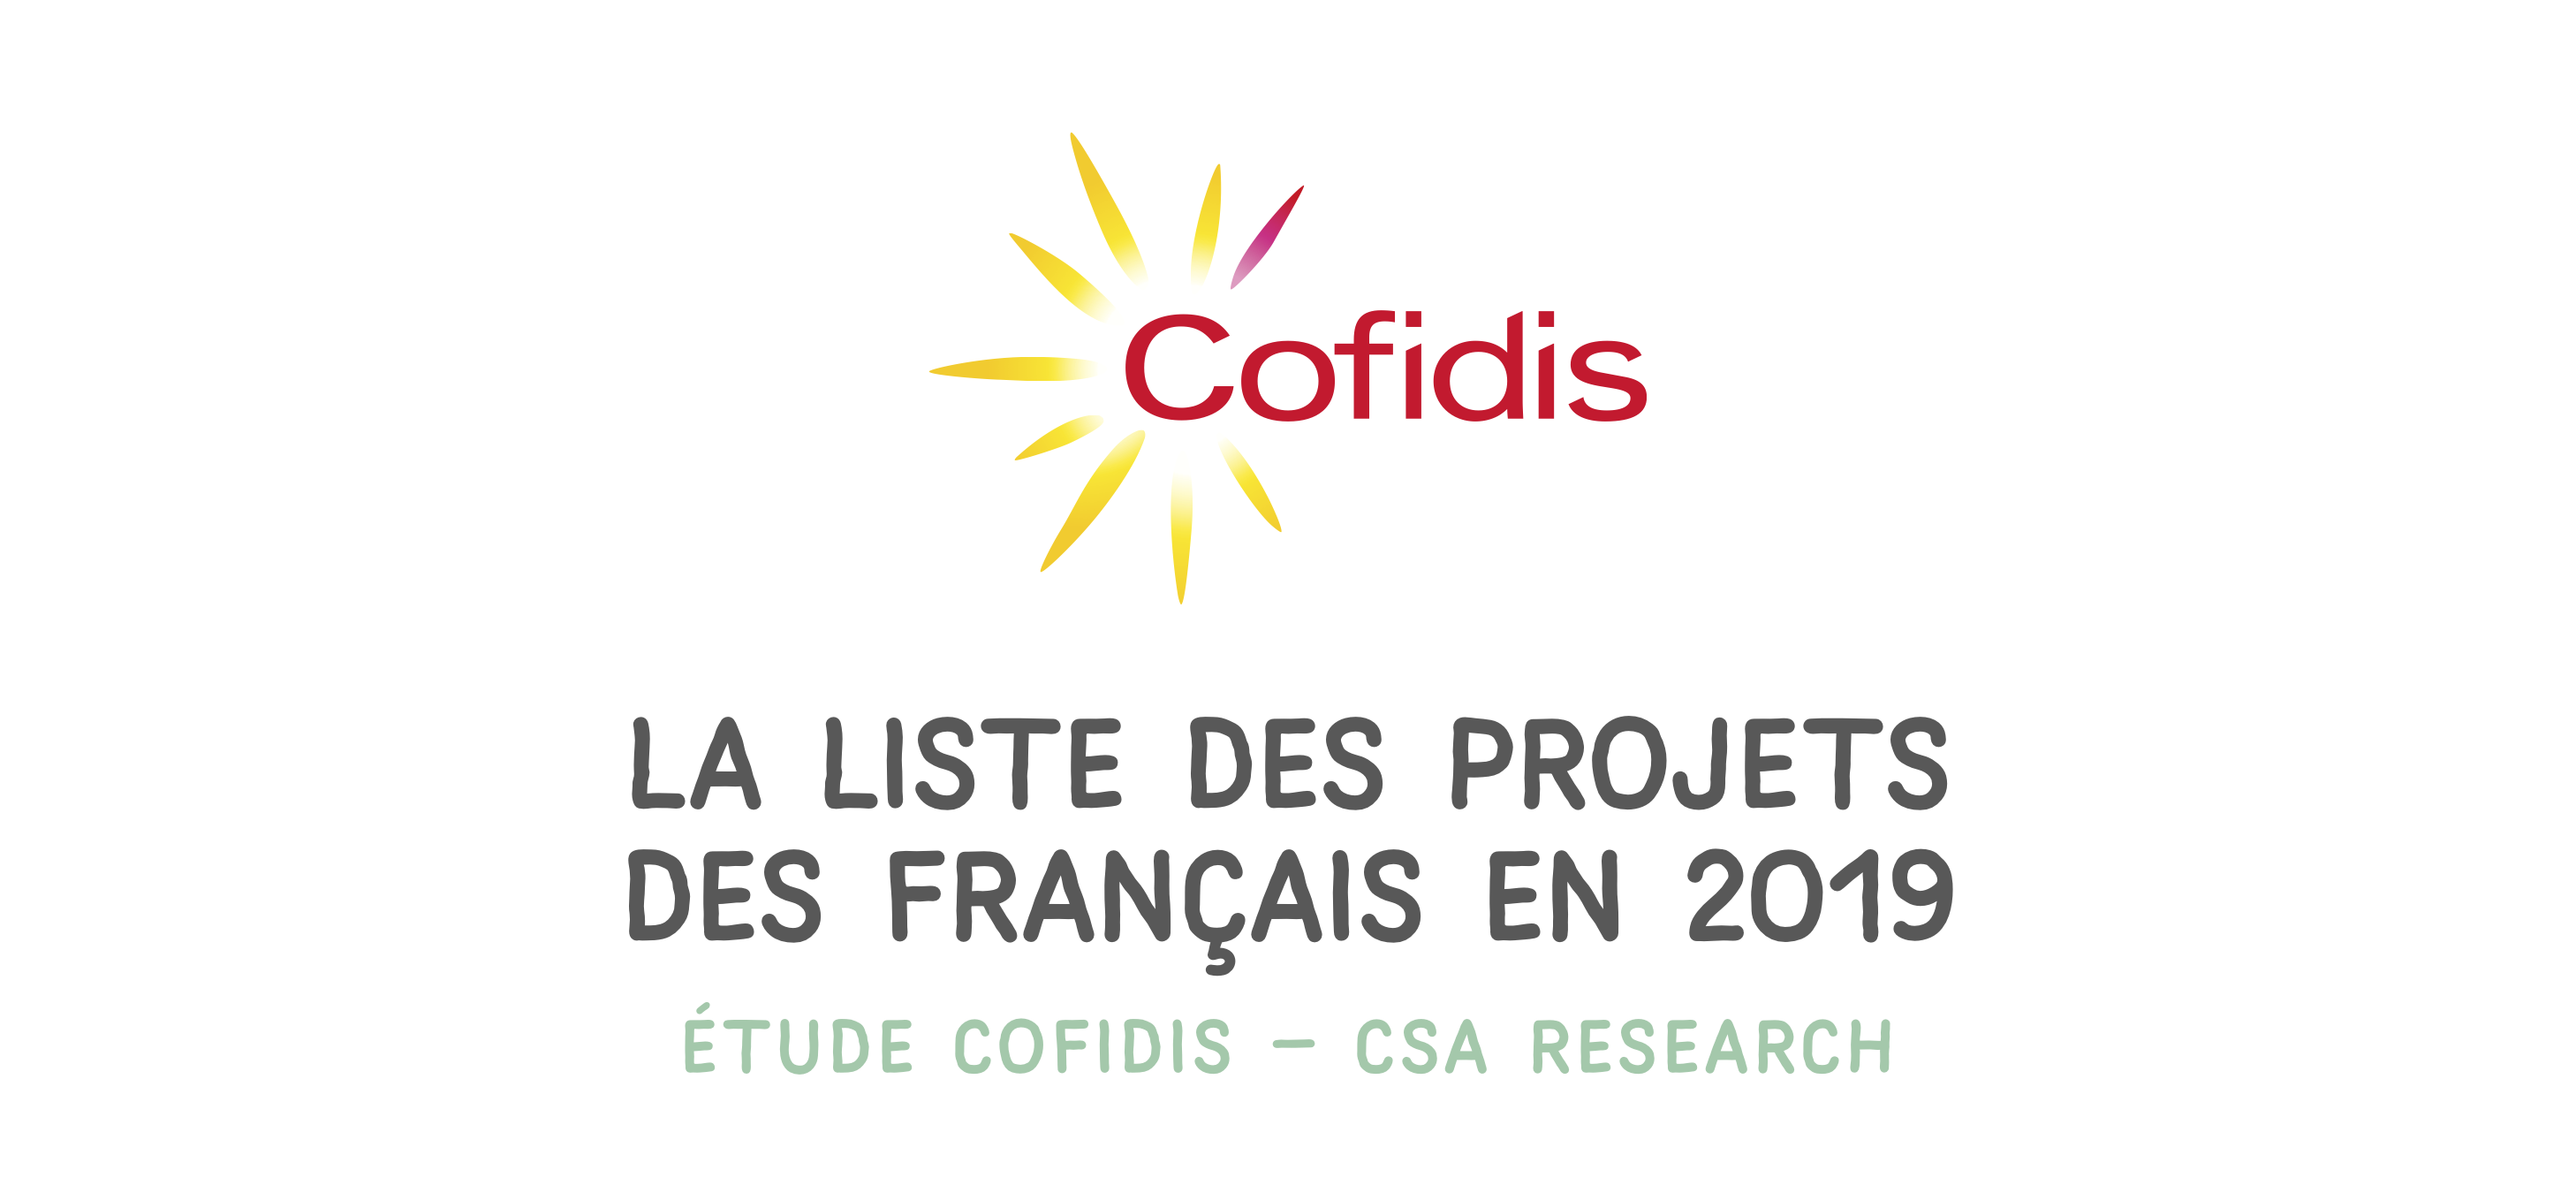 La liste des projets des Francais en 2019